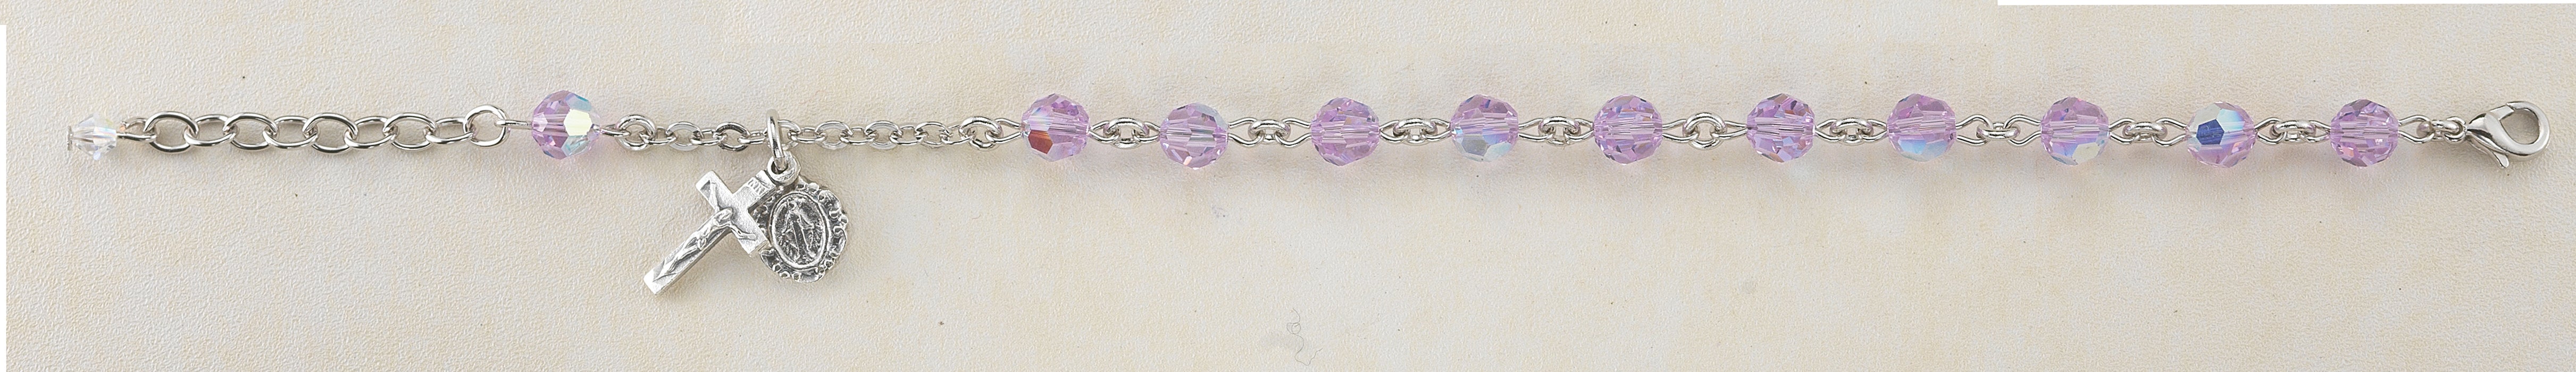 6mm Light Amethyst Swarovksi Crystal Rosary Bracelet